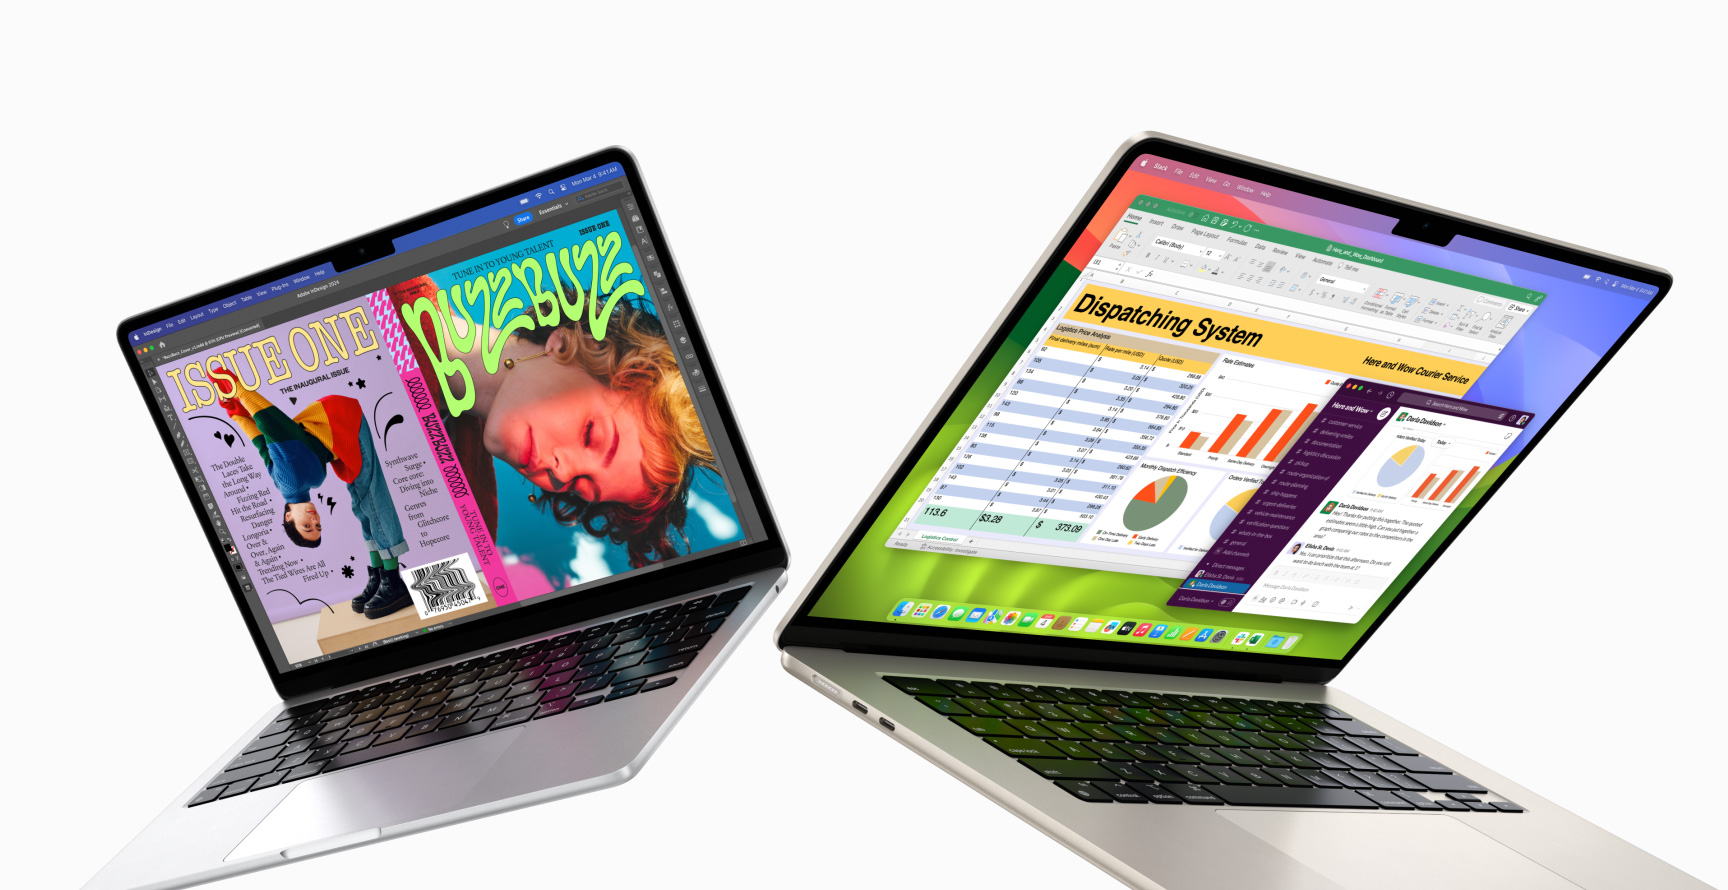 兩部 MacBook Air 微微打開，左側是 13 吋 MacBook Air，右側是 15 吋 MacBook Air。13 吋的螢幕展示用 In Design 製作色彩繽紛的雜誌封面。15 吋的螢幕展示 Microsoft Excel 和 Slack。